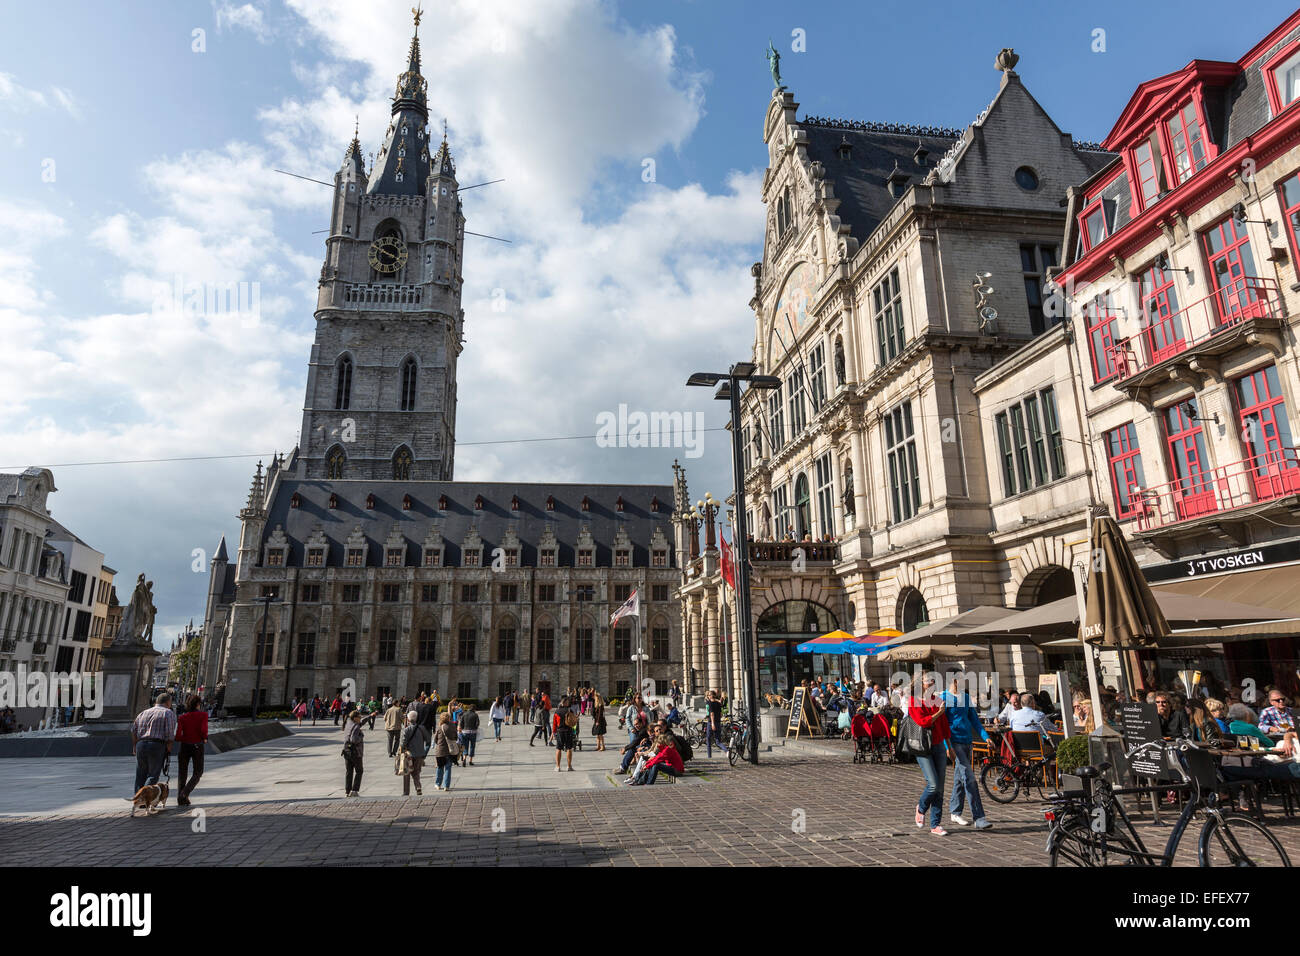 Sint-Baafsplein square with the Het Belfort Stock Photo